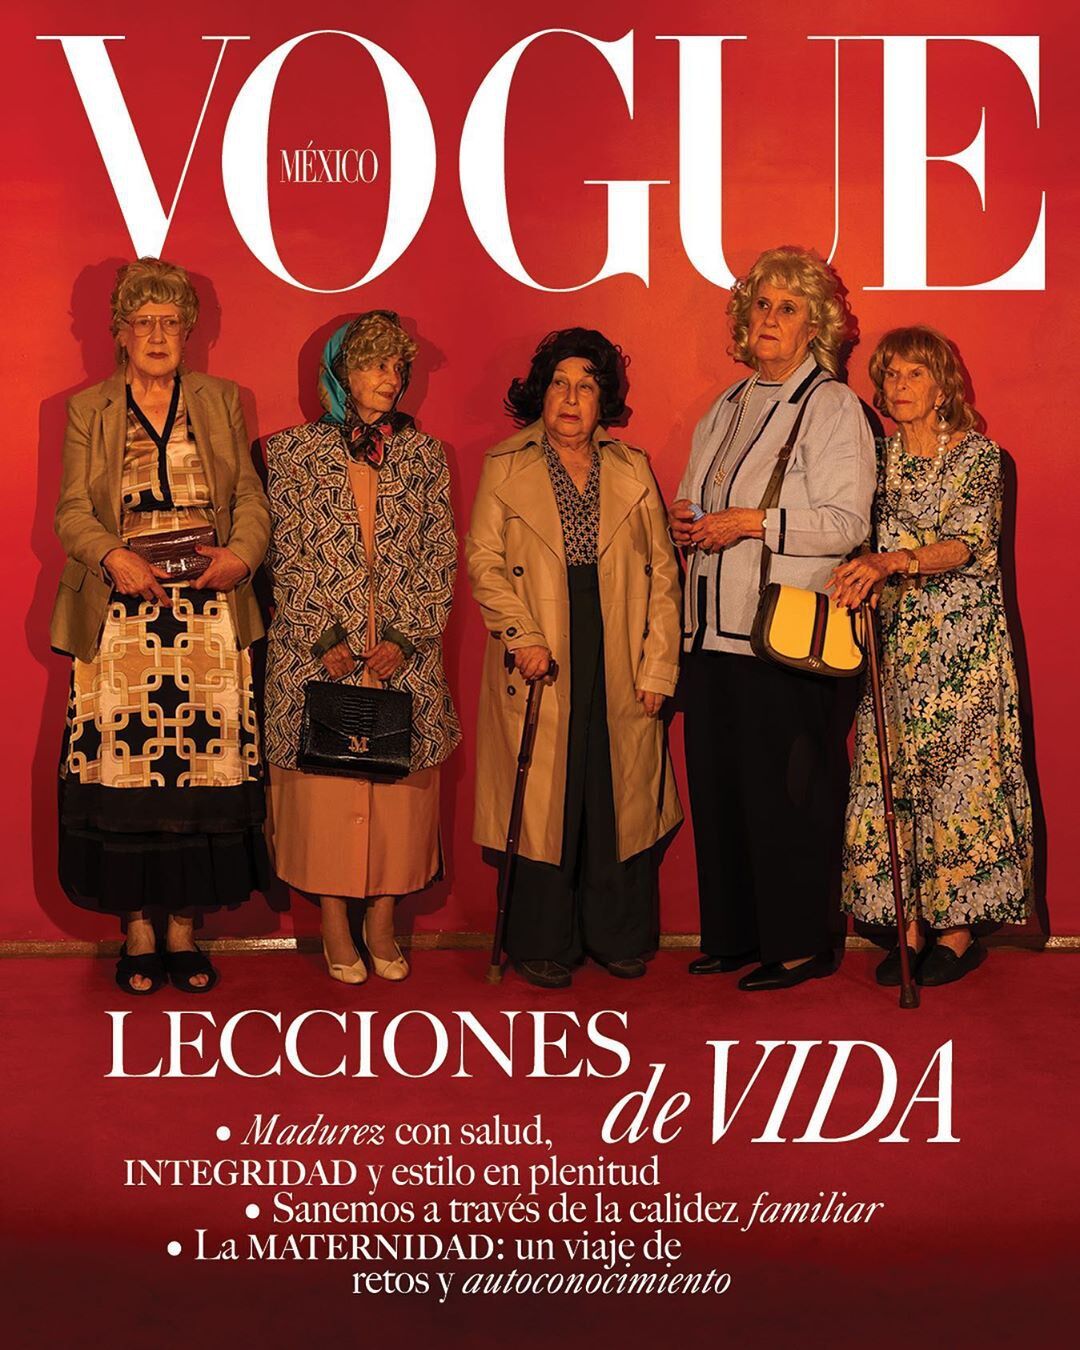 Пенсіонерки потрапили на обкладинку Vogue через пандемію коронавірусу